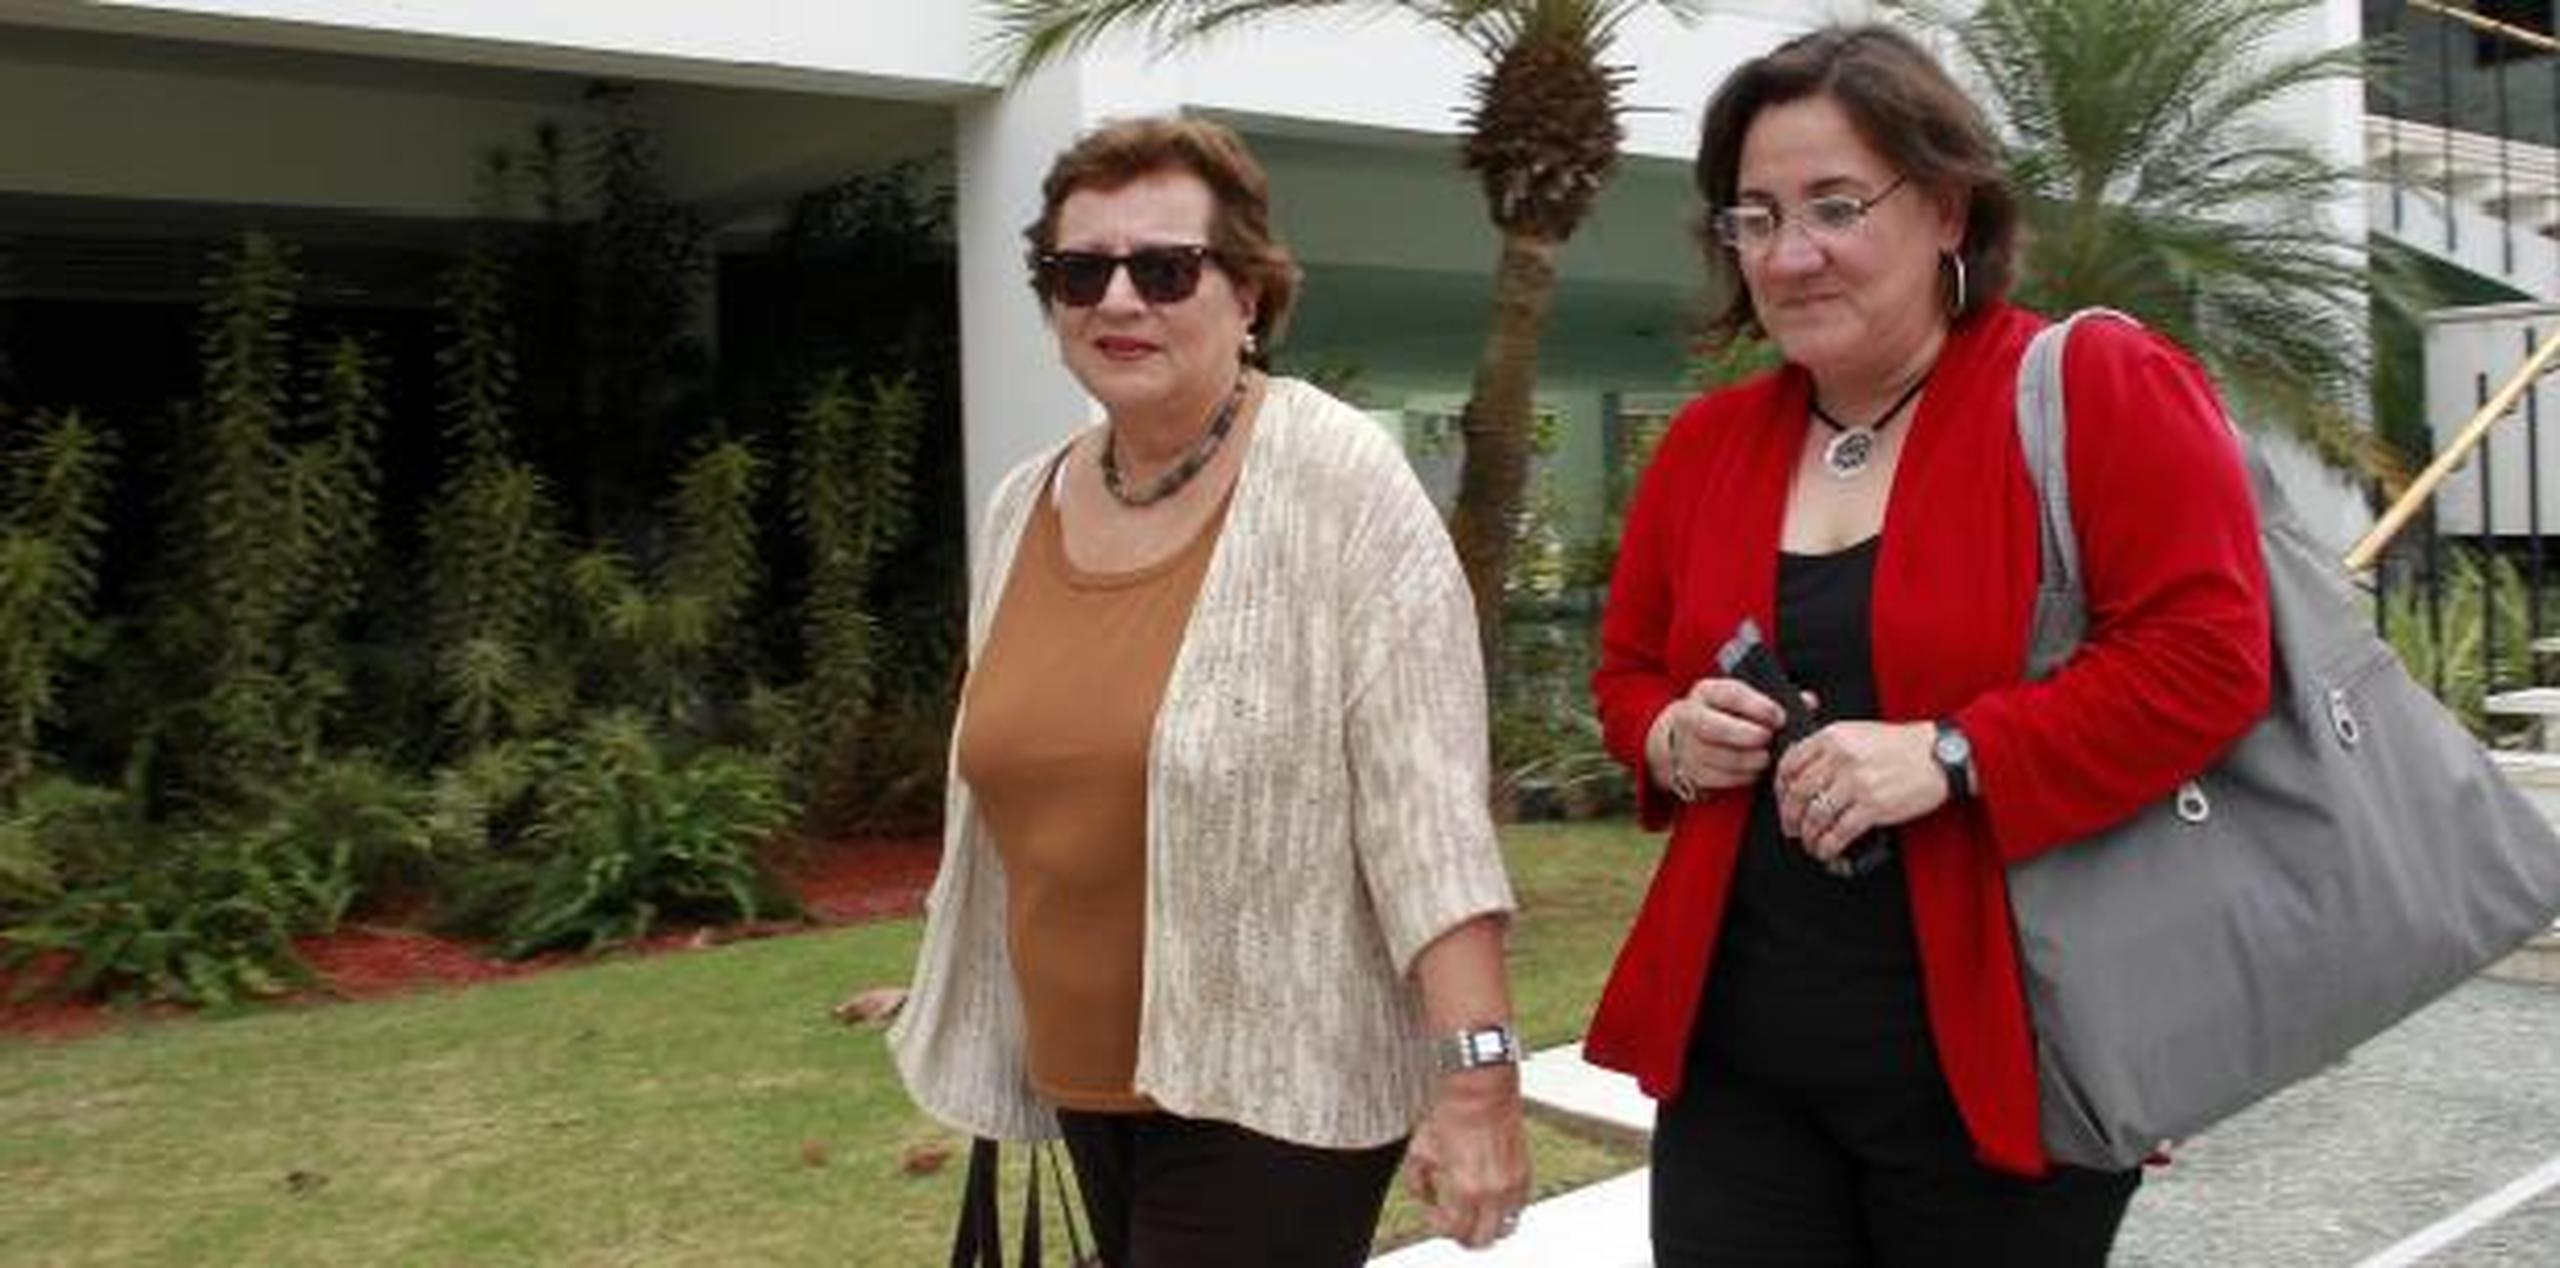 El pasado mes, la pareja, compuesta por Ángeles Acosta y  Carmen Milagros Vélez, llegaron juntas al Tribunal Supremo para entregar la moción de reconsideración. (Archivo)